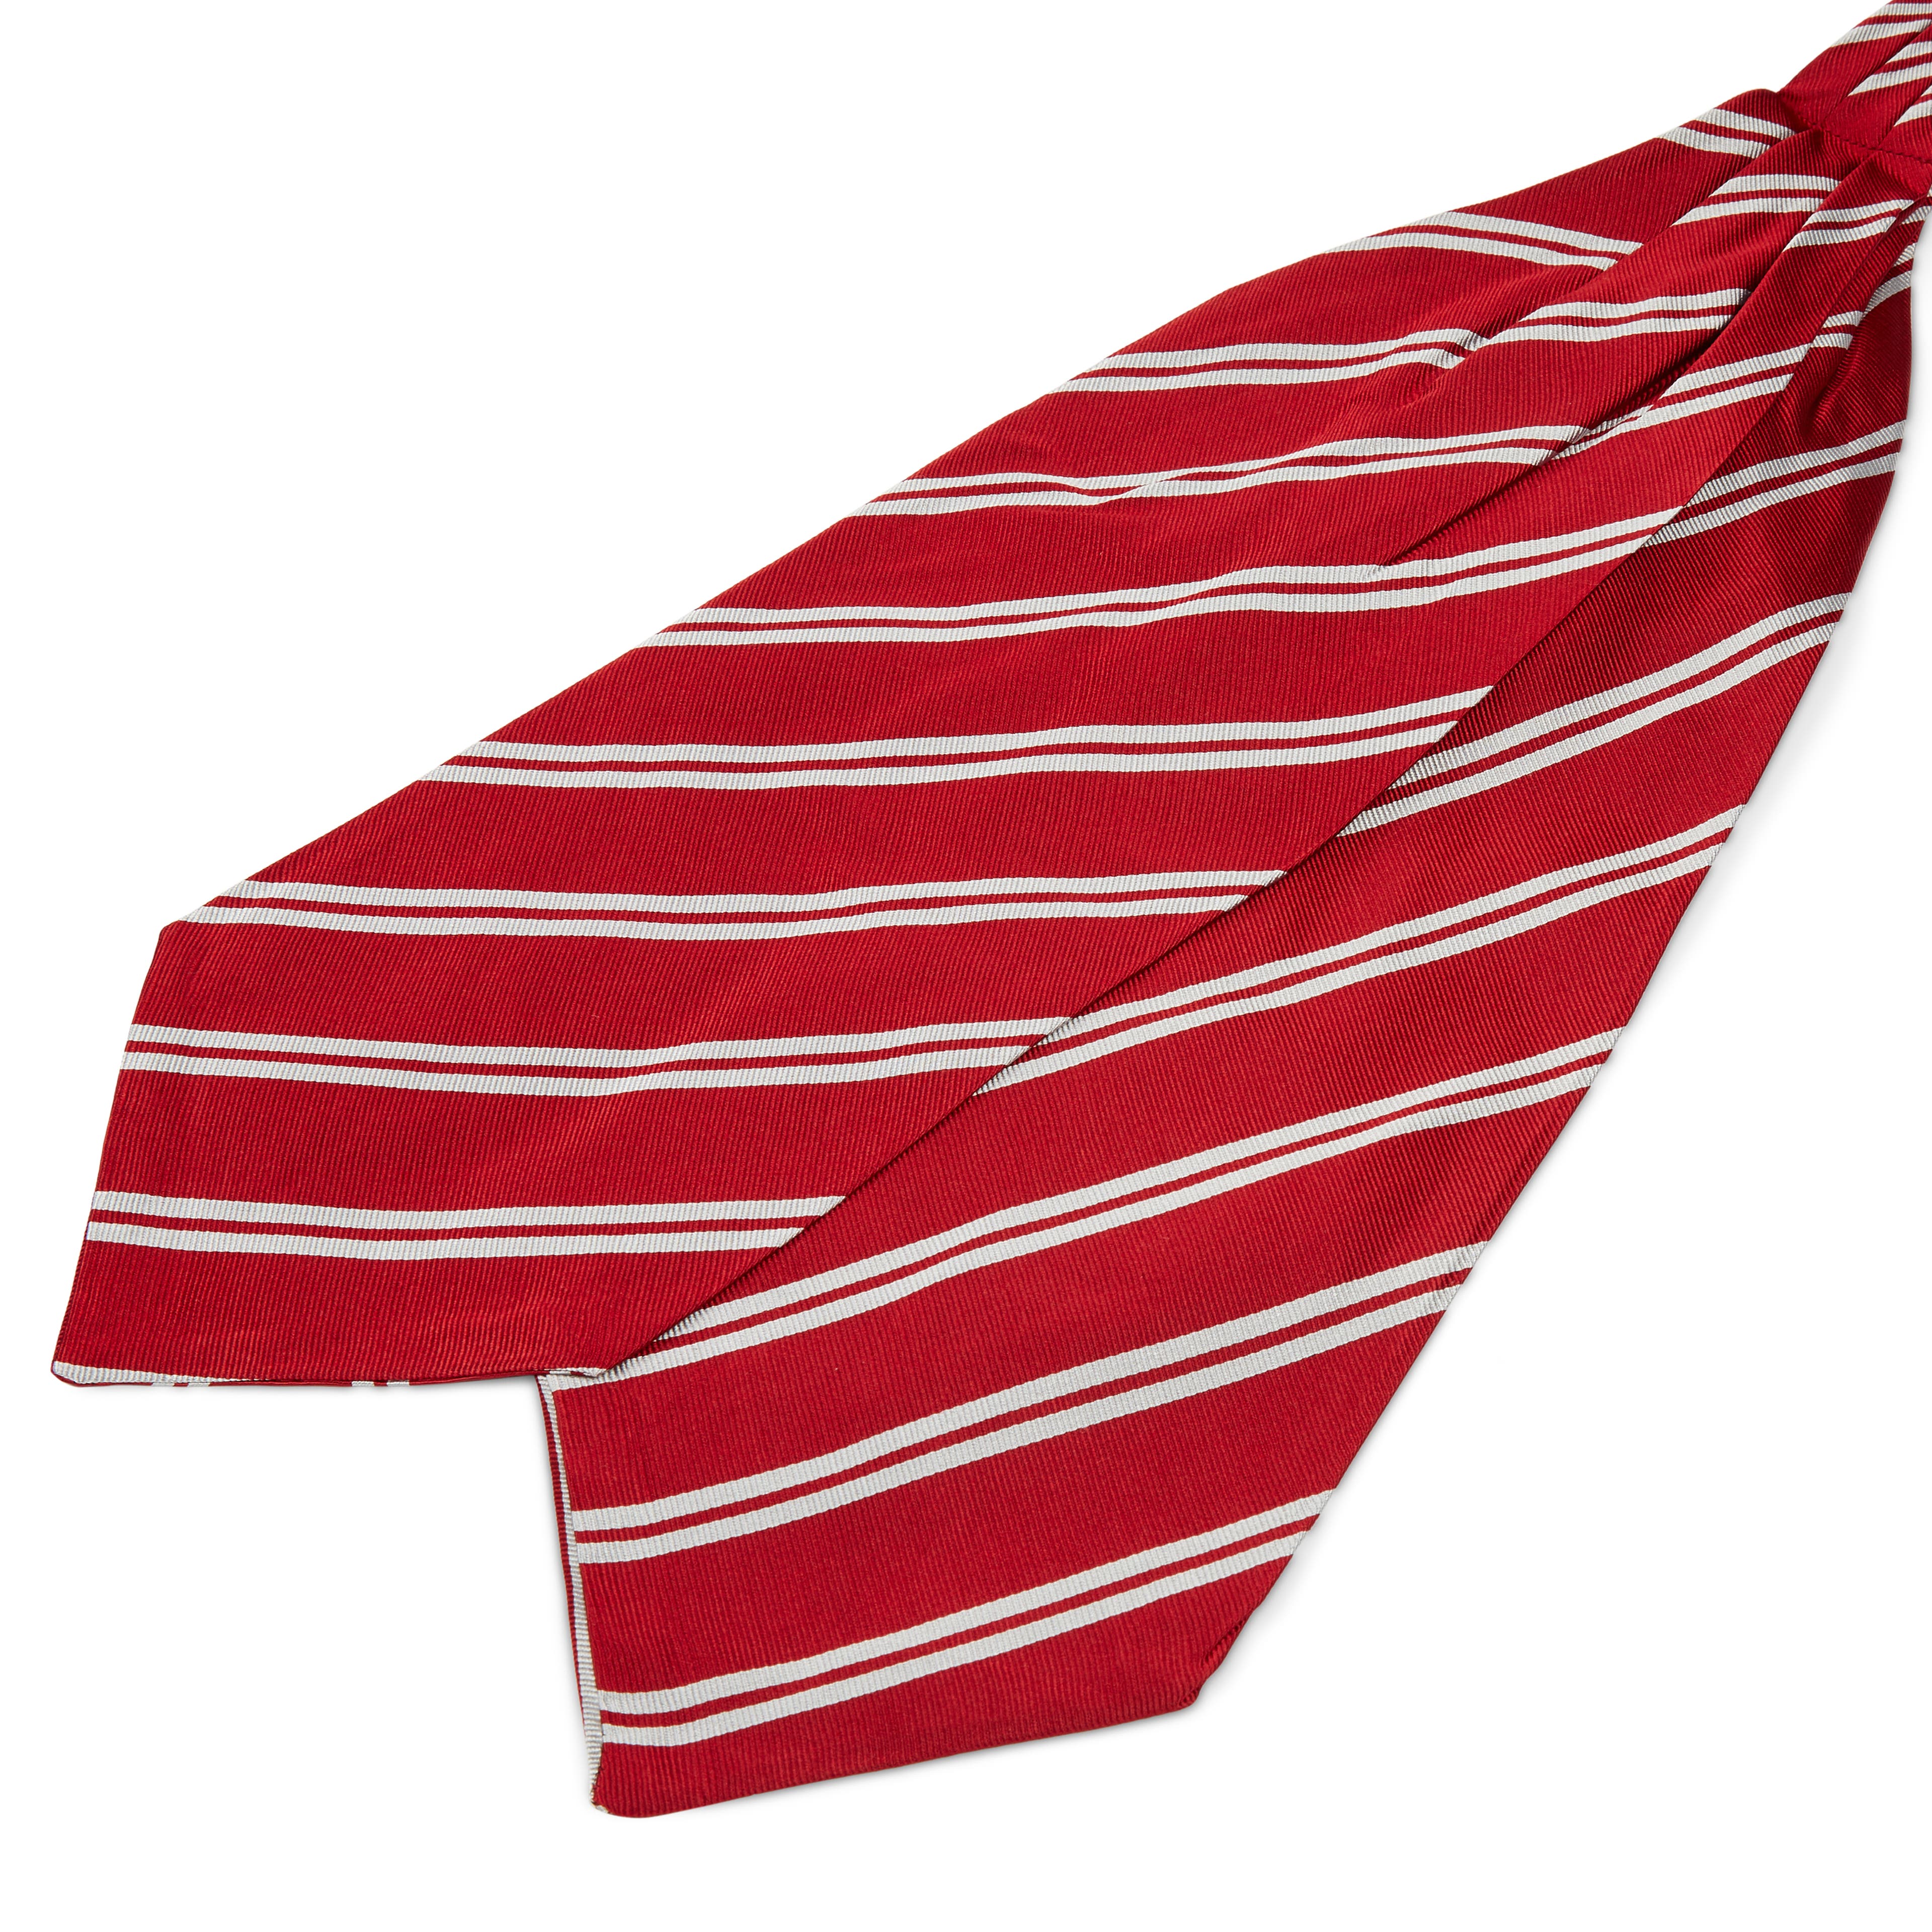 Cravată 8 cm din mătase roșie cu dungi duble albe